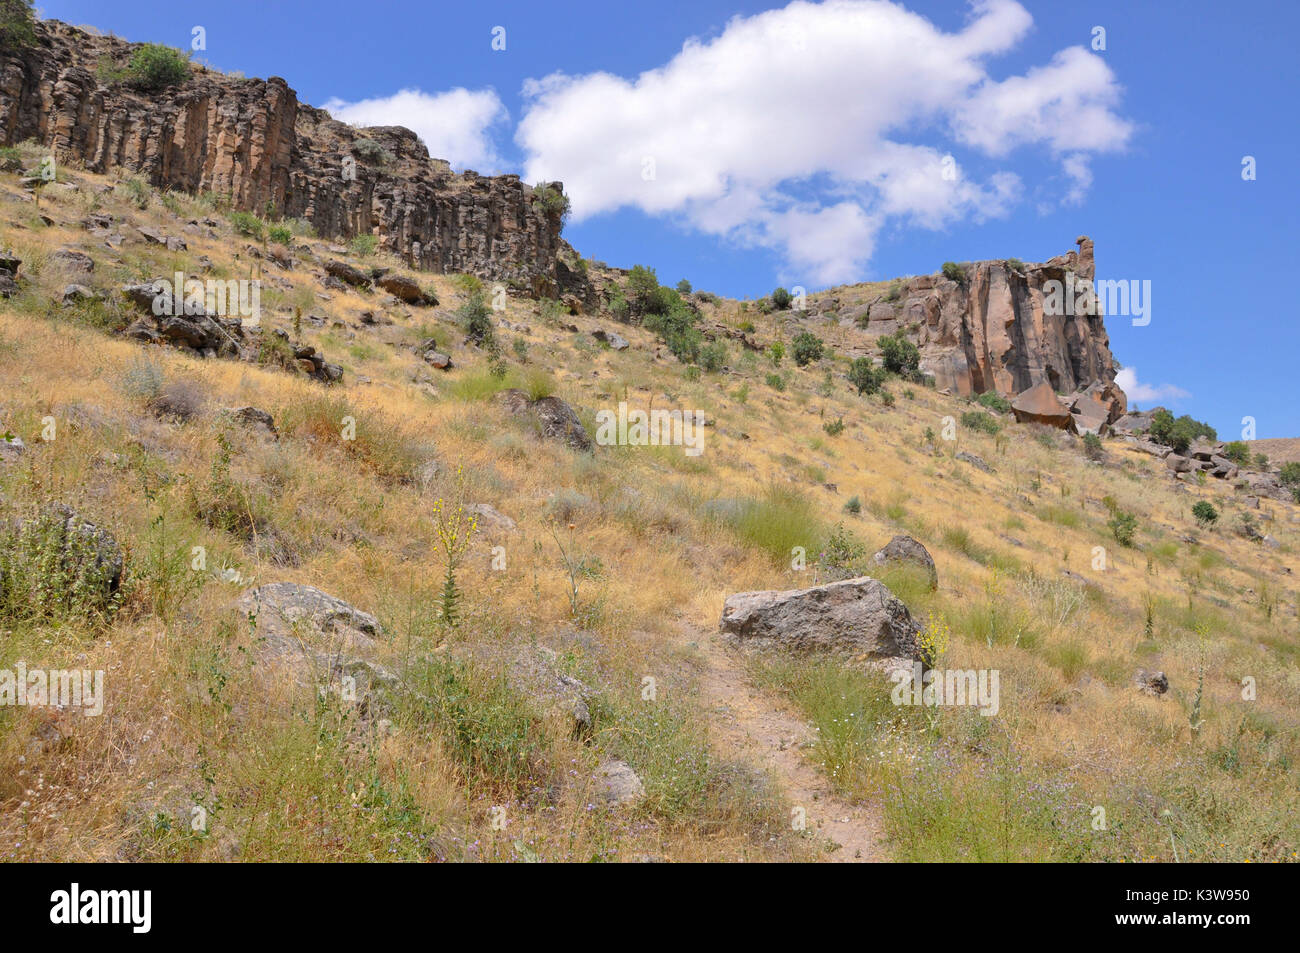 Die Ihlara Tal in der Türkei, in Kappadokia, ist 14 km von Ihlara, Salime. Dieses Tal ist Tiefe 100-150m und entlang gibt es Gräber, Kirchen und Schutzhütten in den Fels gegraben. Stockfoto